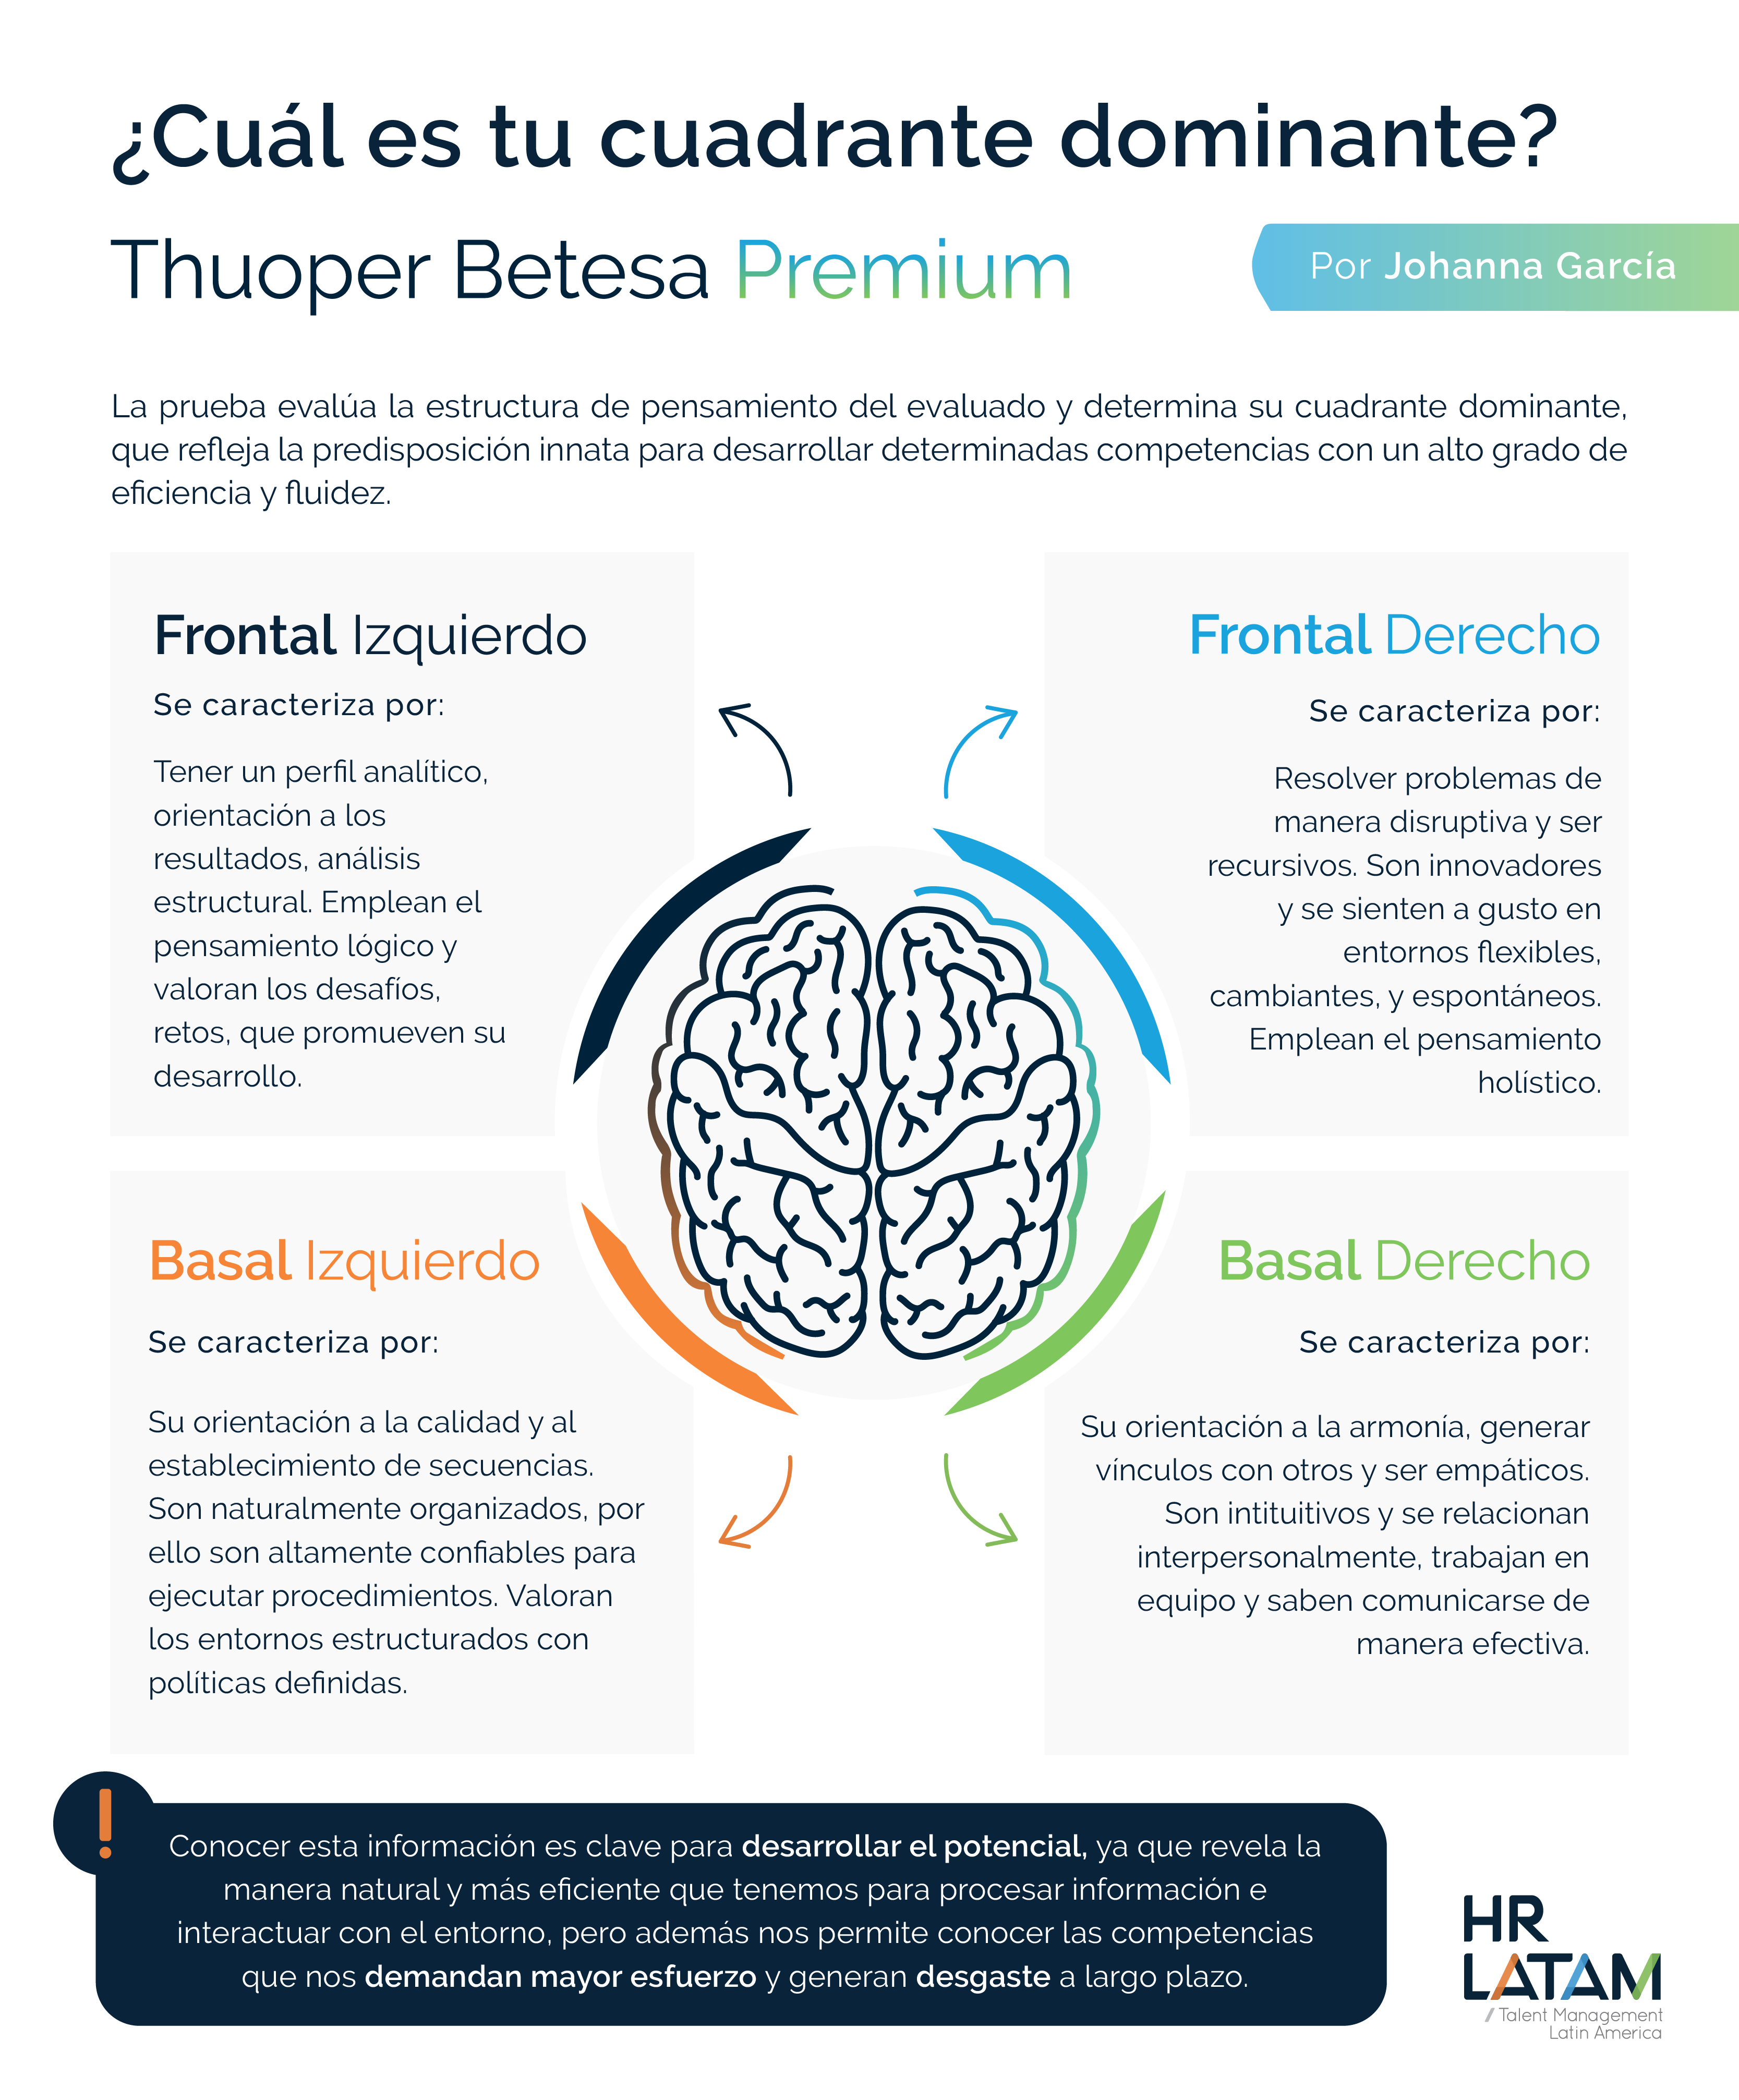 ¿Cuál es tu cuadrante dominante?: La prueba de Thuoper Betesa Premium